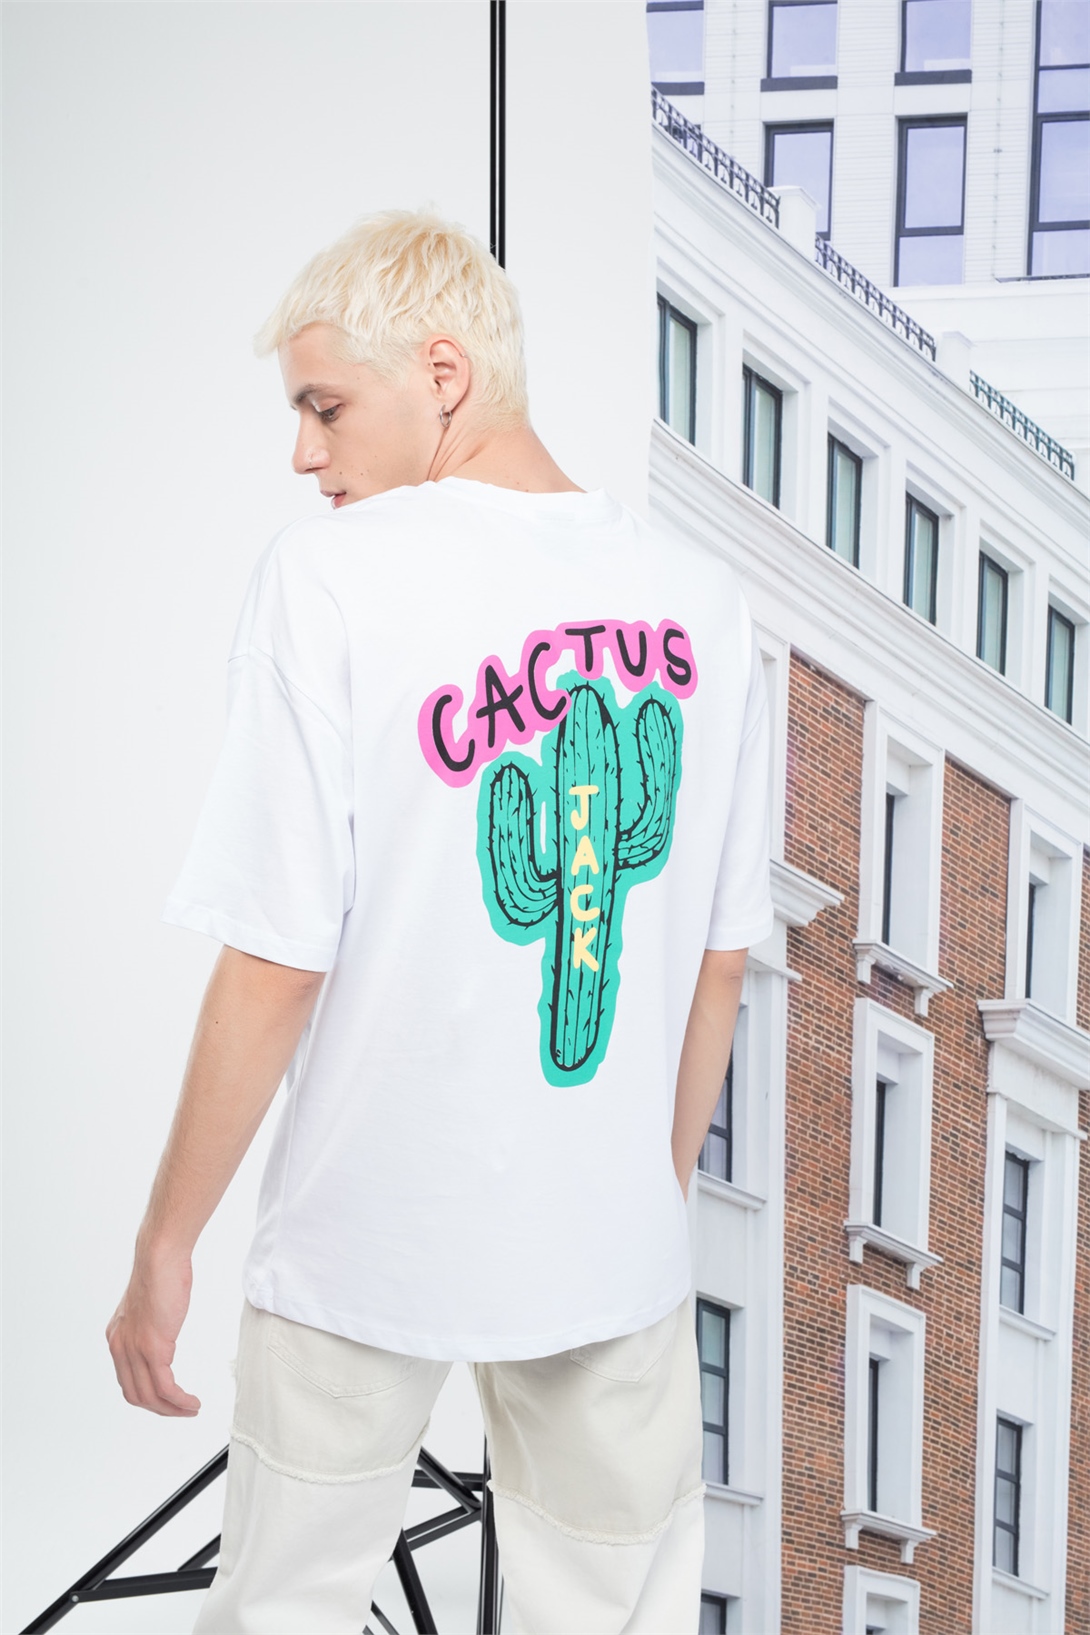 Trendiz Erkek Cactusjack Tshirt Beyaz